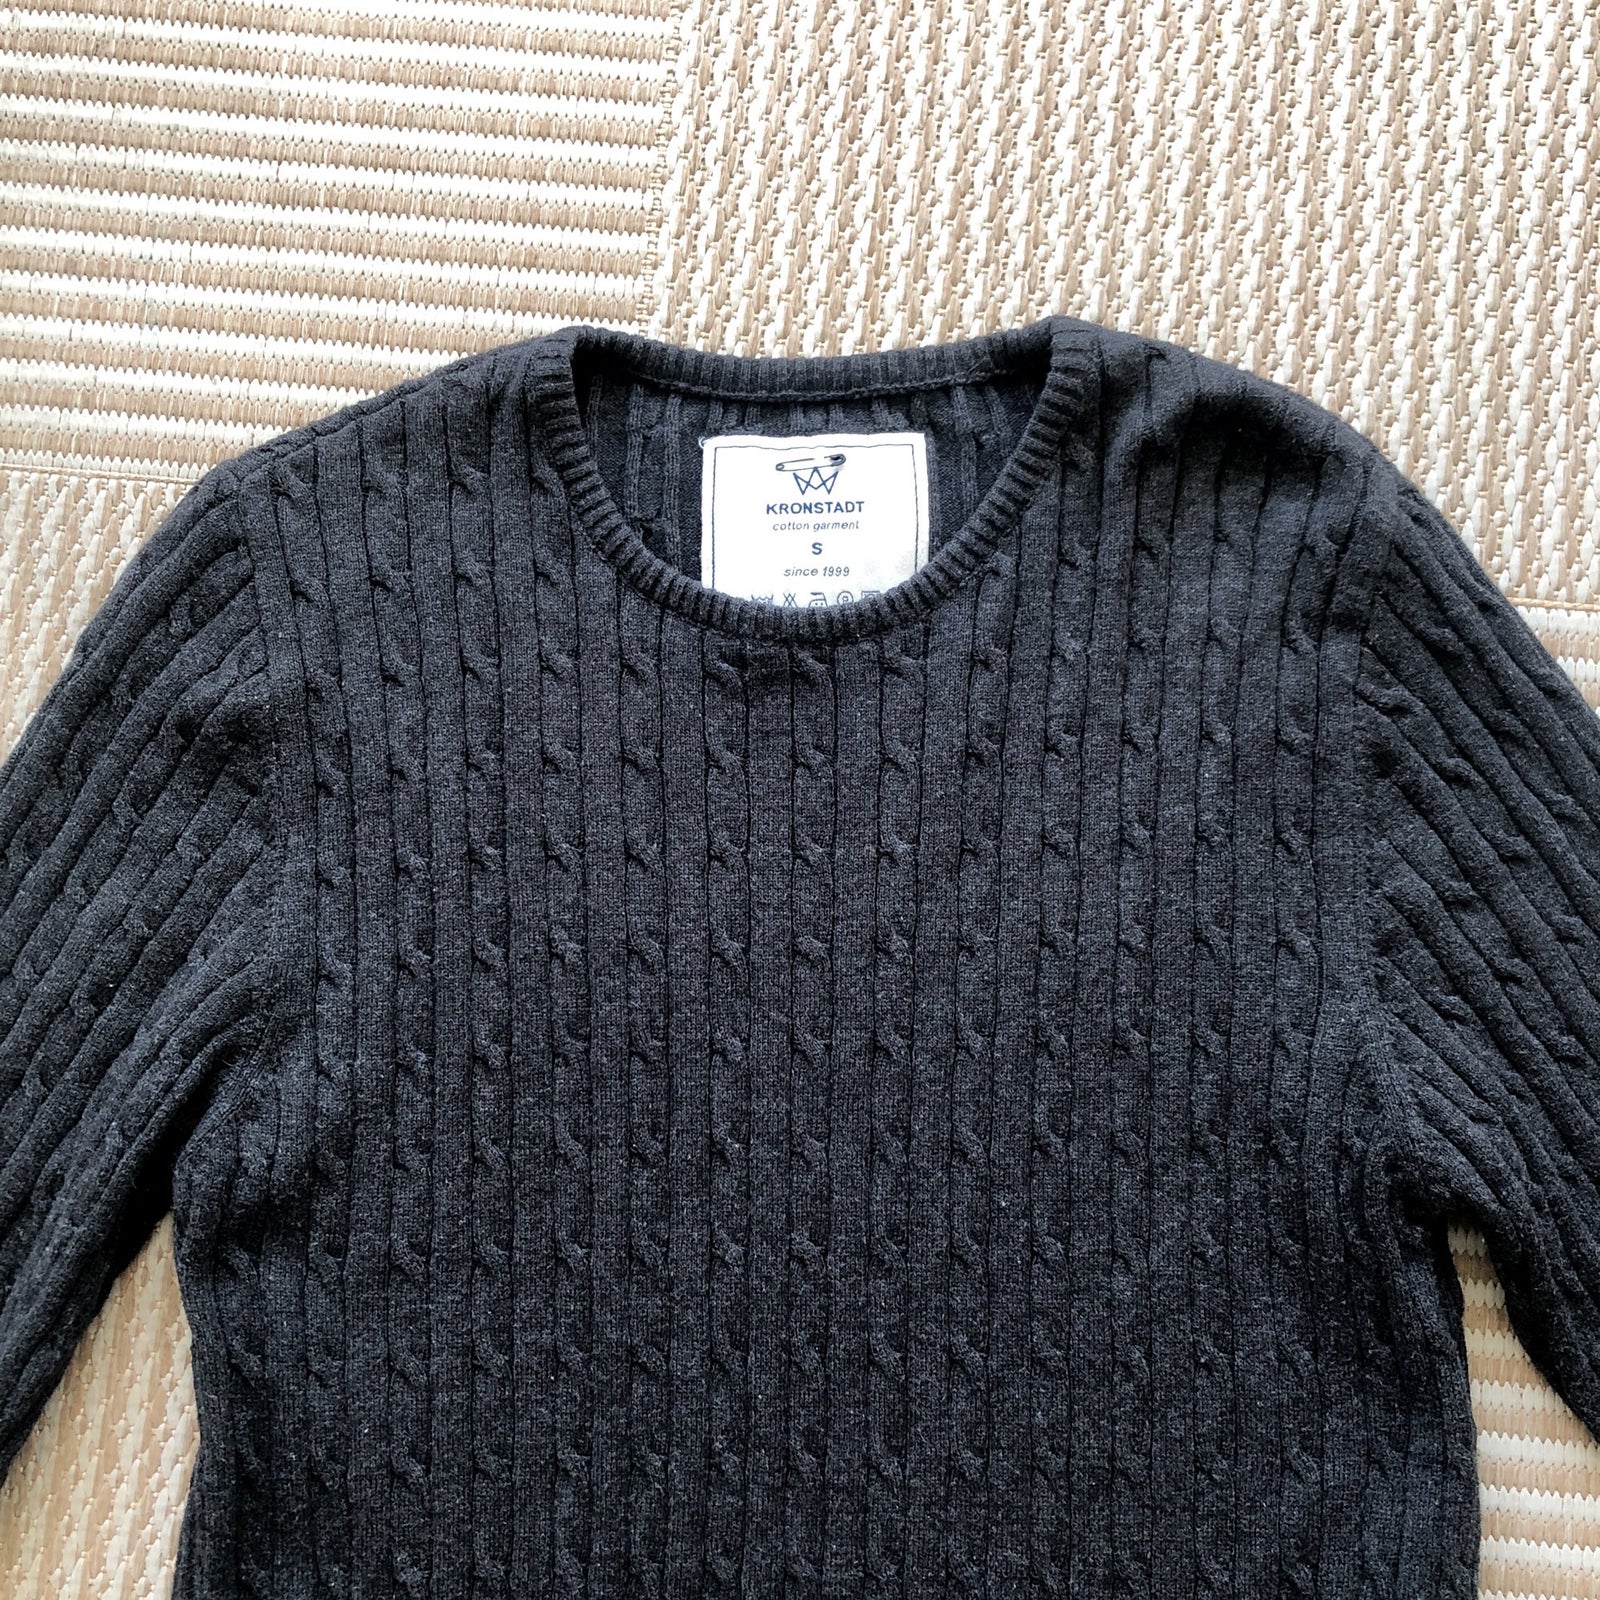 Sweater, Kronstadt, str. S